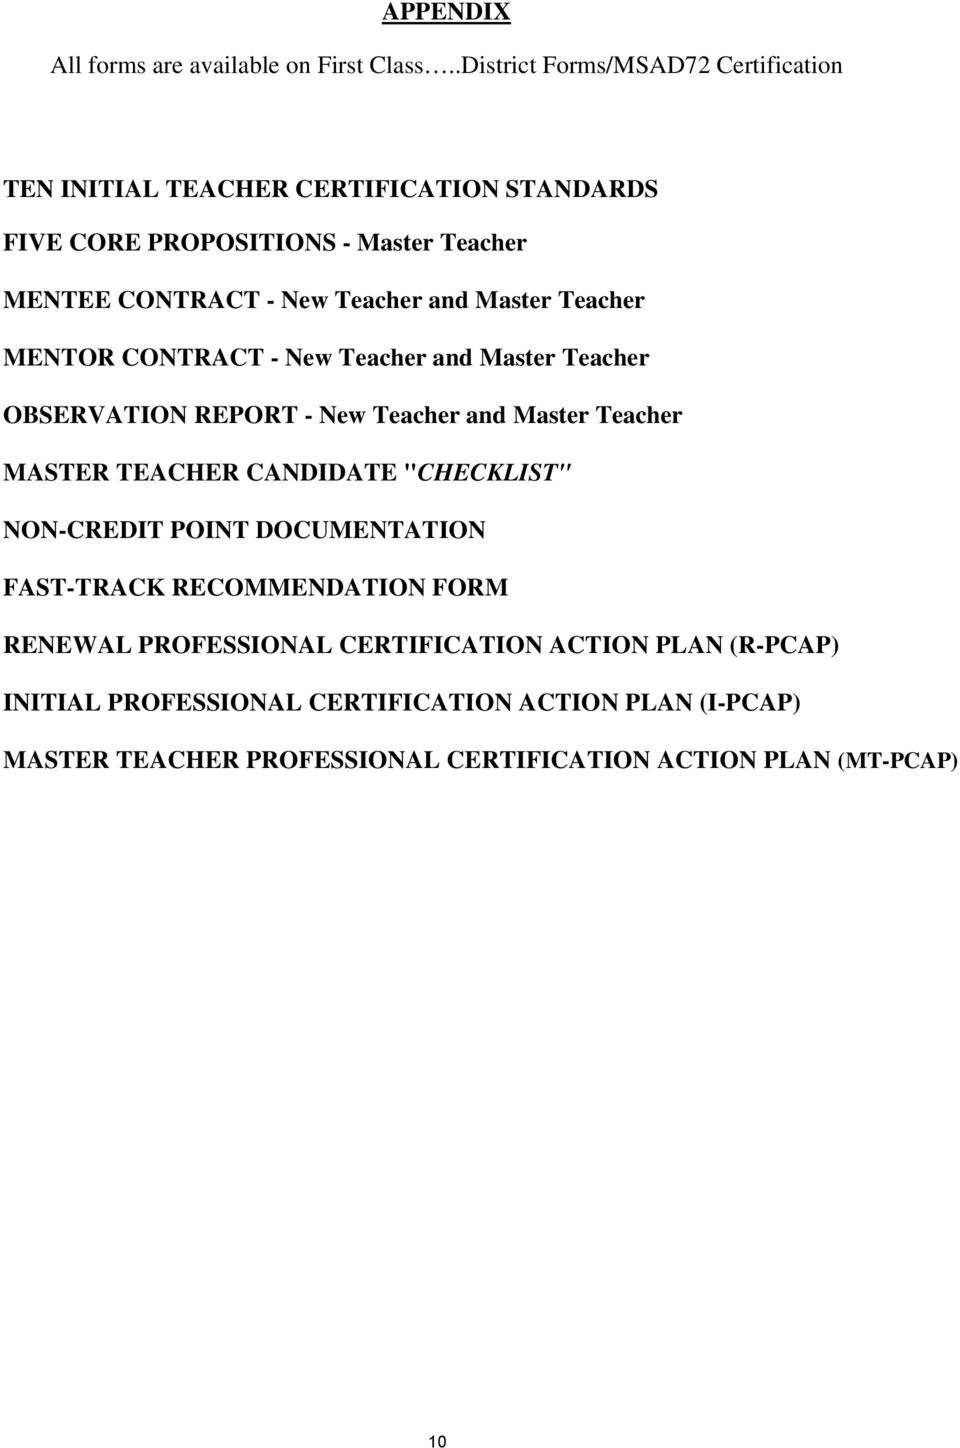 Teacher and Master Teacher MENTOR CONTRACT - New Teacher and Master Teacher OBSERVATION REPORT - New Teacher and Master Teacher MASTER TEACHER